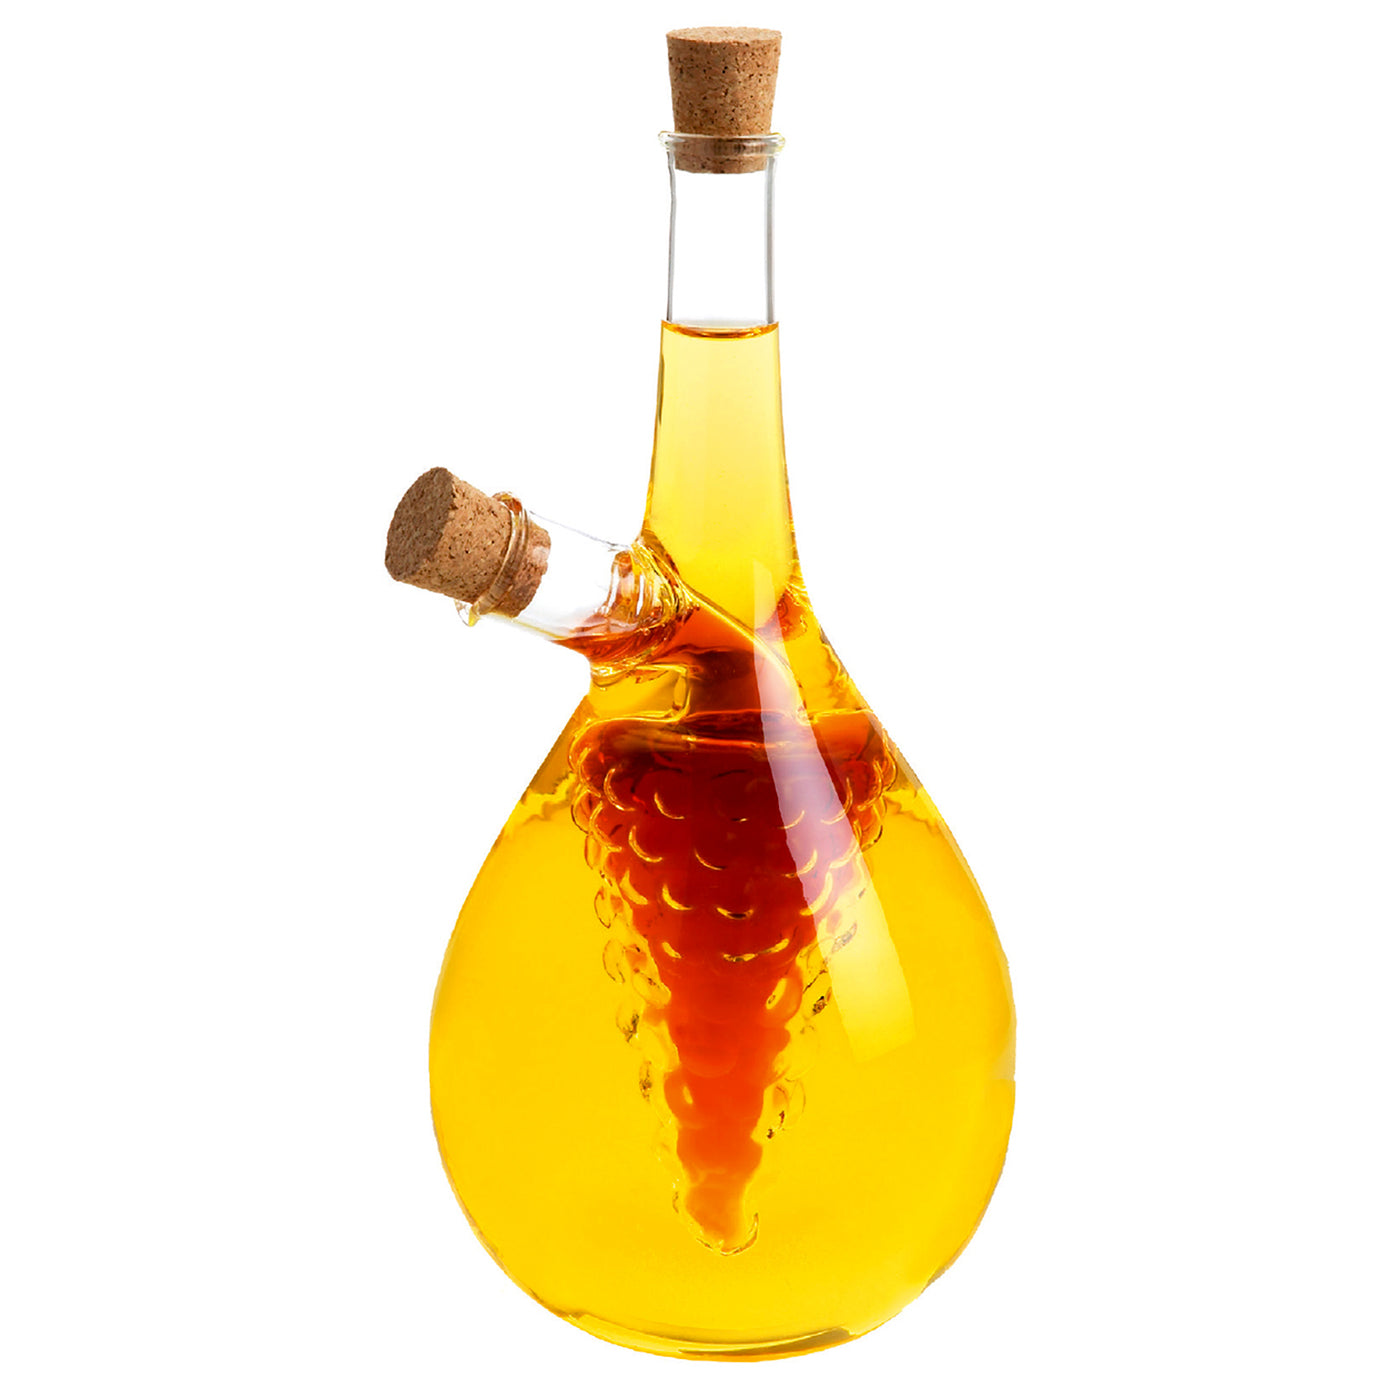 oil and vinegar bottles target